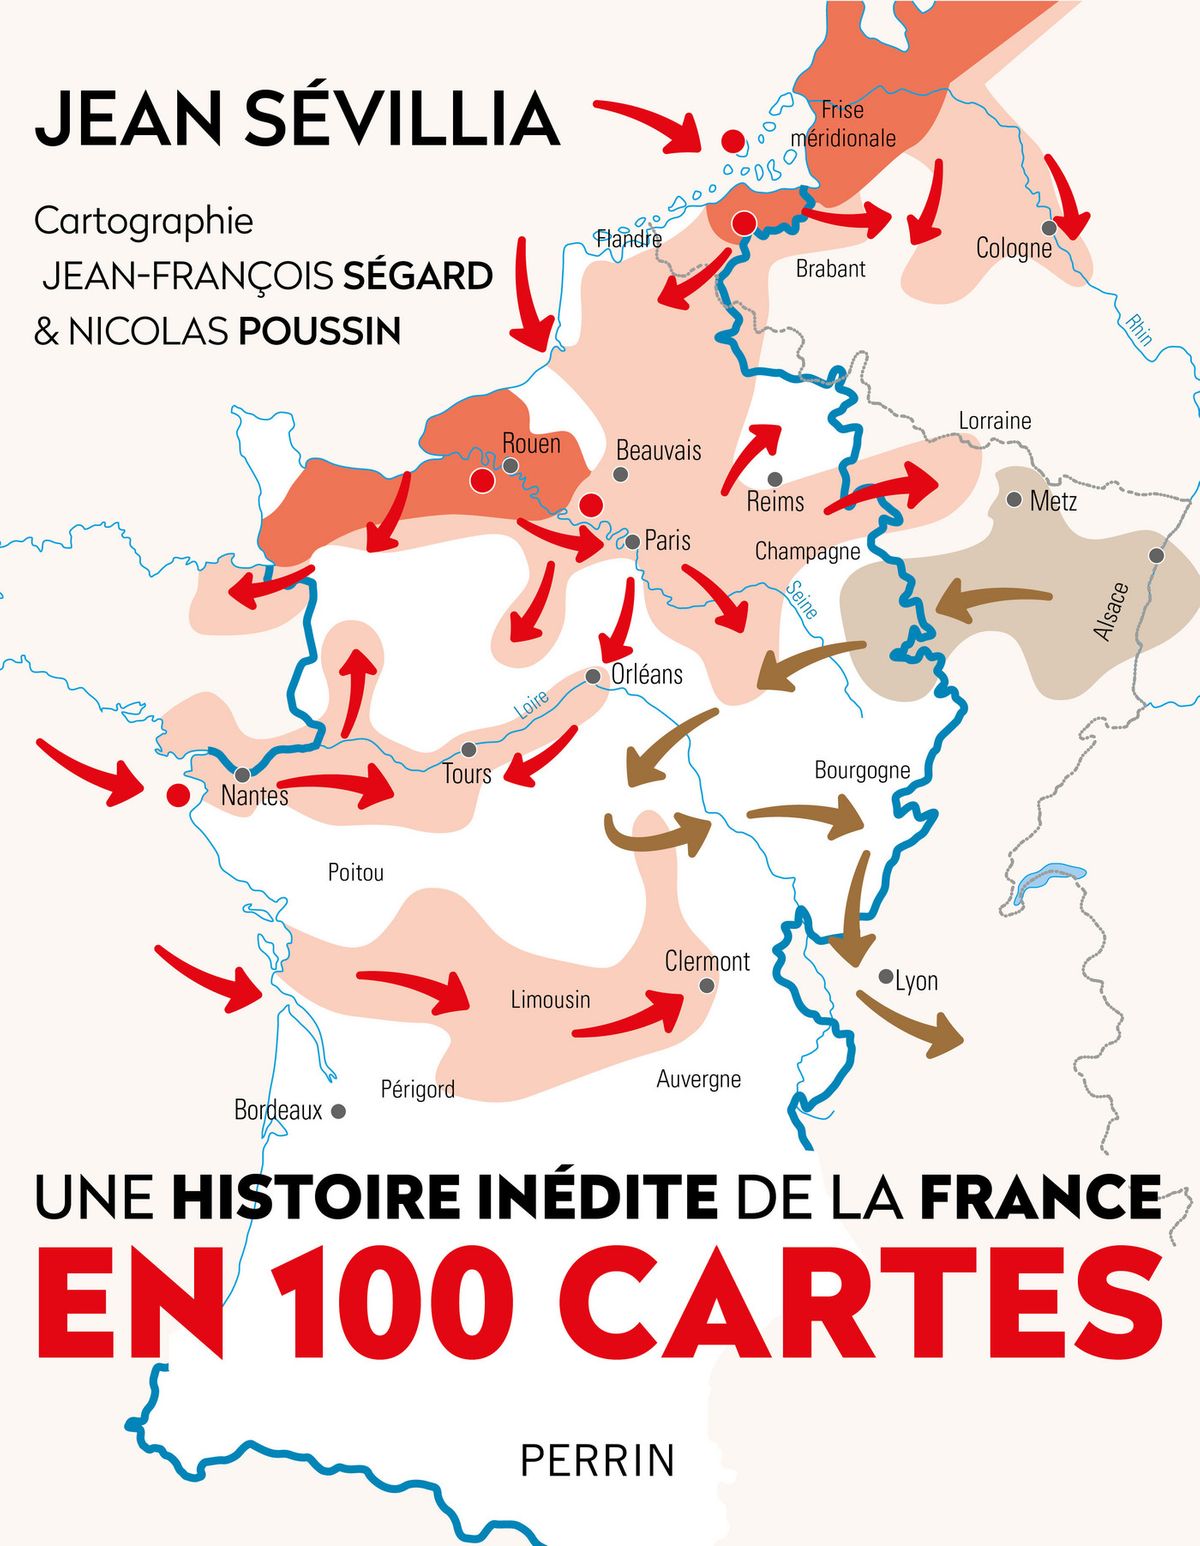 Vient de paraître : Une histoire inédite de la France en 100 cartes, de l’historien Jean Sévillia